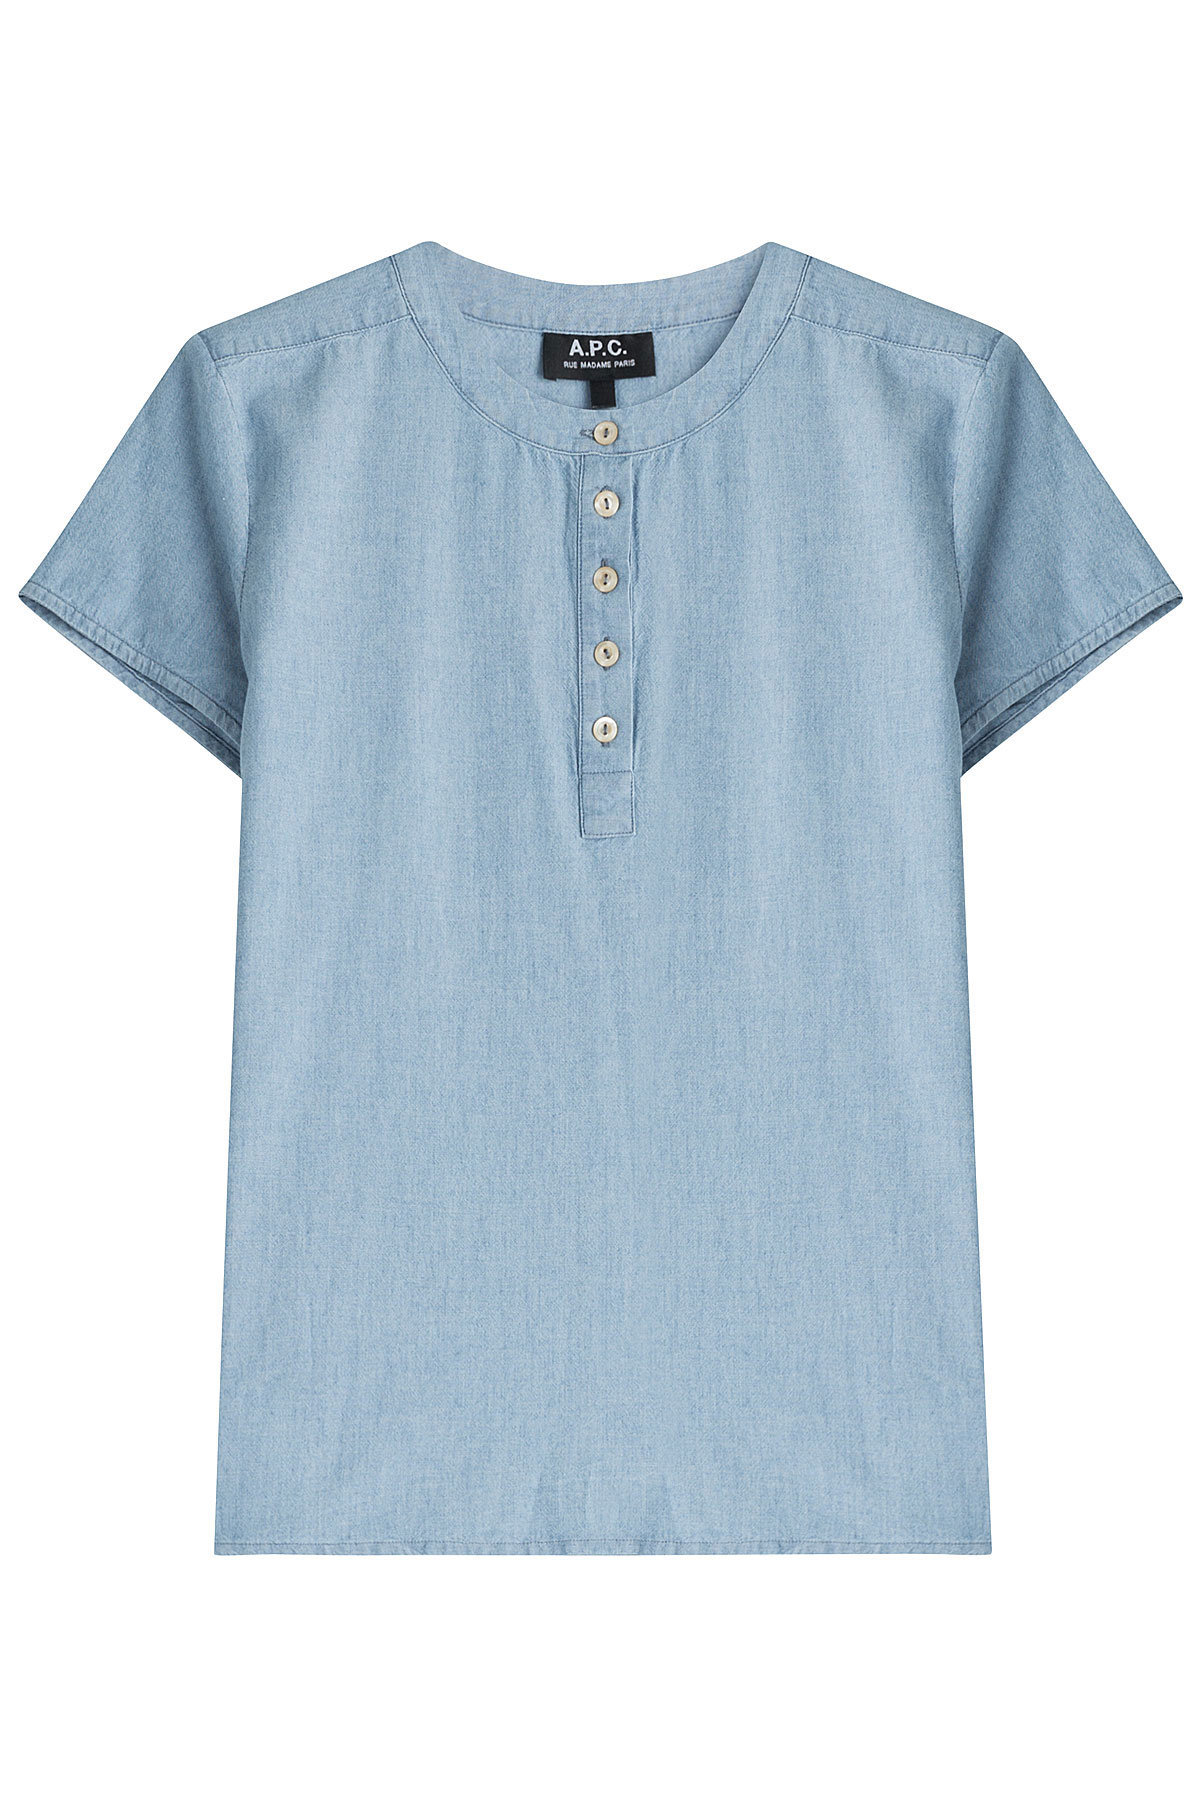 A.P.C. - Cotton Henley Shirt